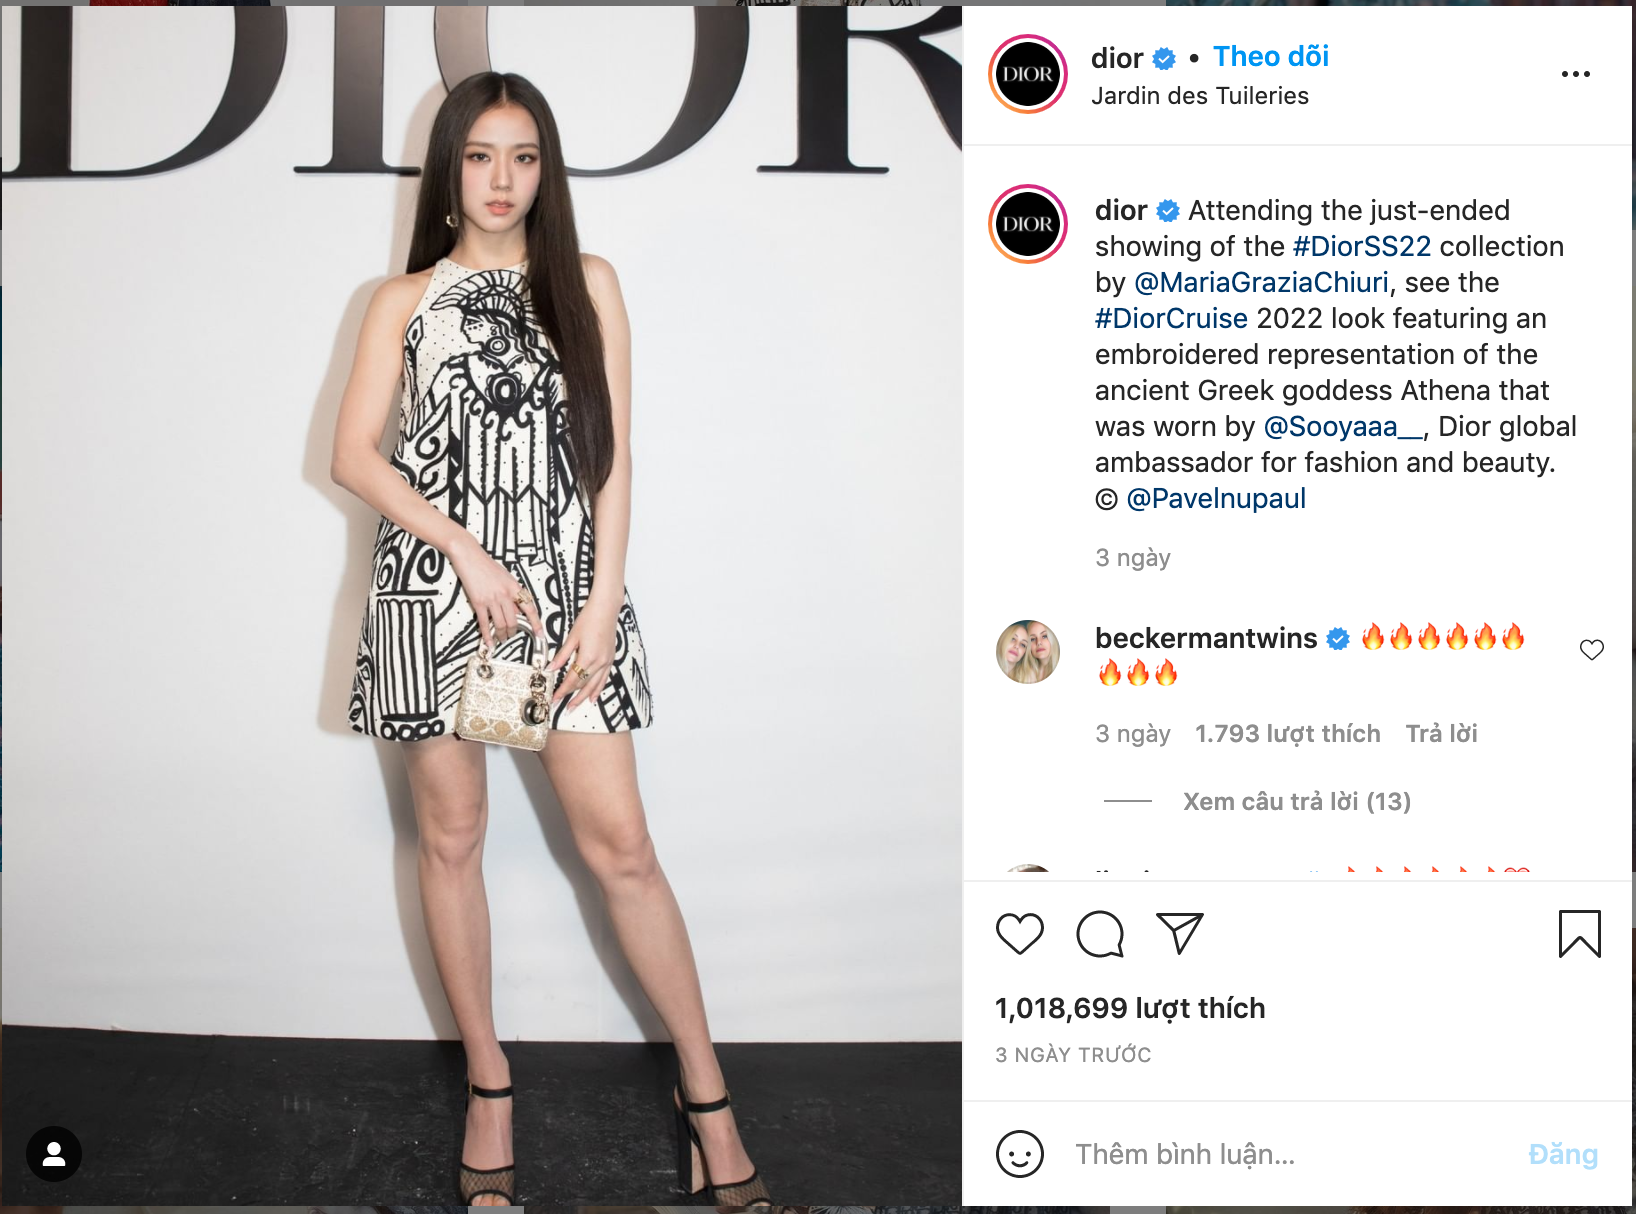 Thương hiệu đình đám Dior lần đầu tiên có bài post 1 triệu like, nhưng là nhờ sự xuất hiện của một idol Hàn Quốc? - Ảnh 2.